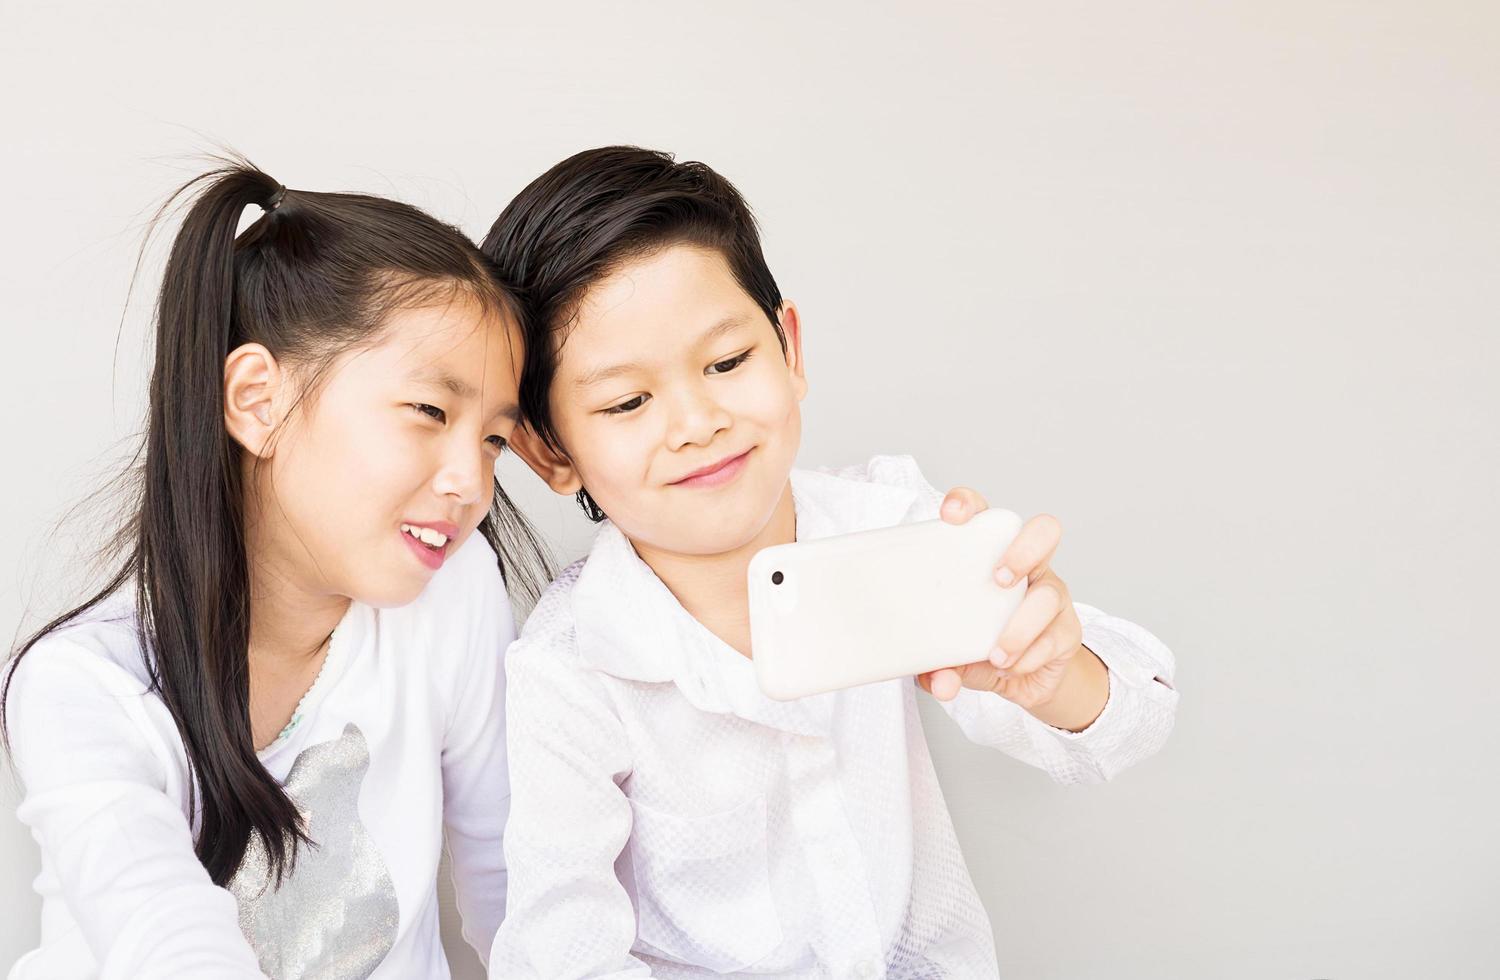 mooie Aziatische paar schoolkinderen nemen selfie, 7 en 10 jaar oud, over grijze achtergrond foto